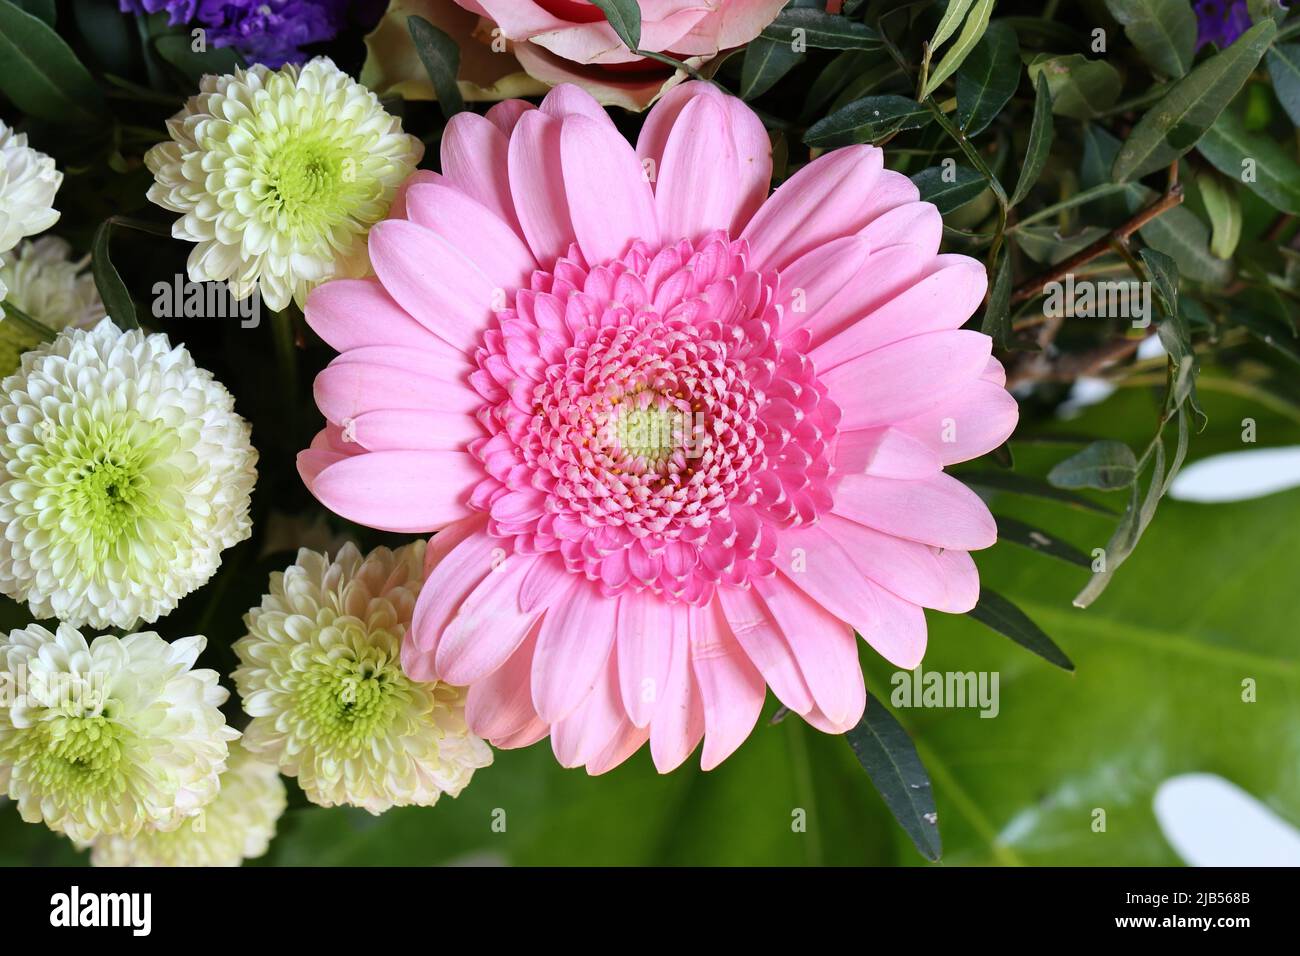 Nahaufnahme einer schönen hellrosa Gerbera in einem Blumenstrauß Stockfoto